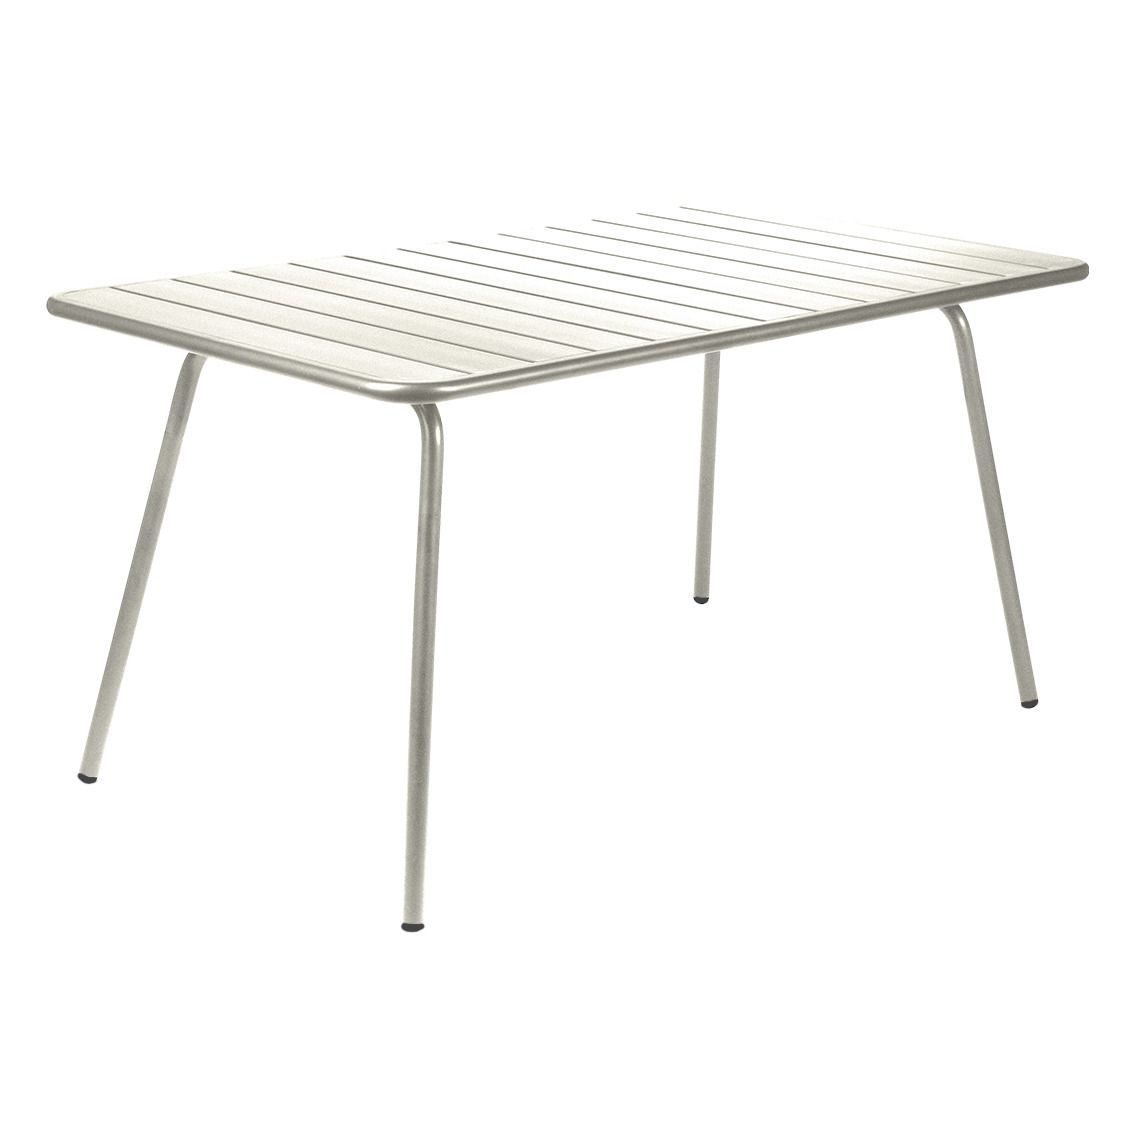 Fermob - Table Luxembourg en aluminium - 143x80 cm - Gris argile